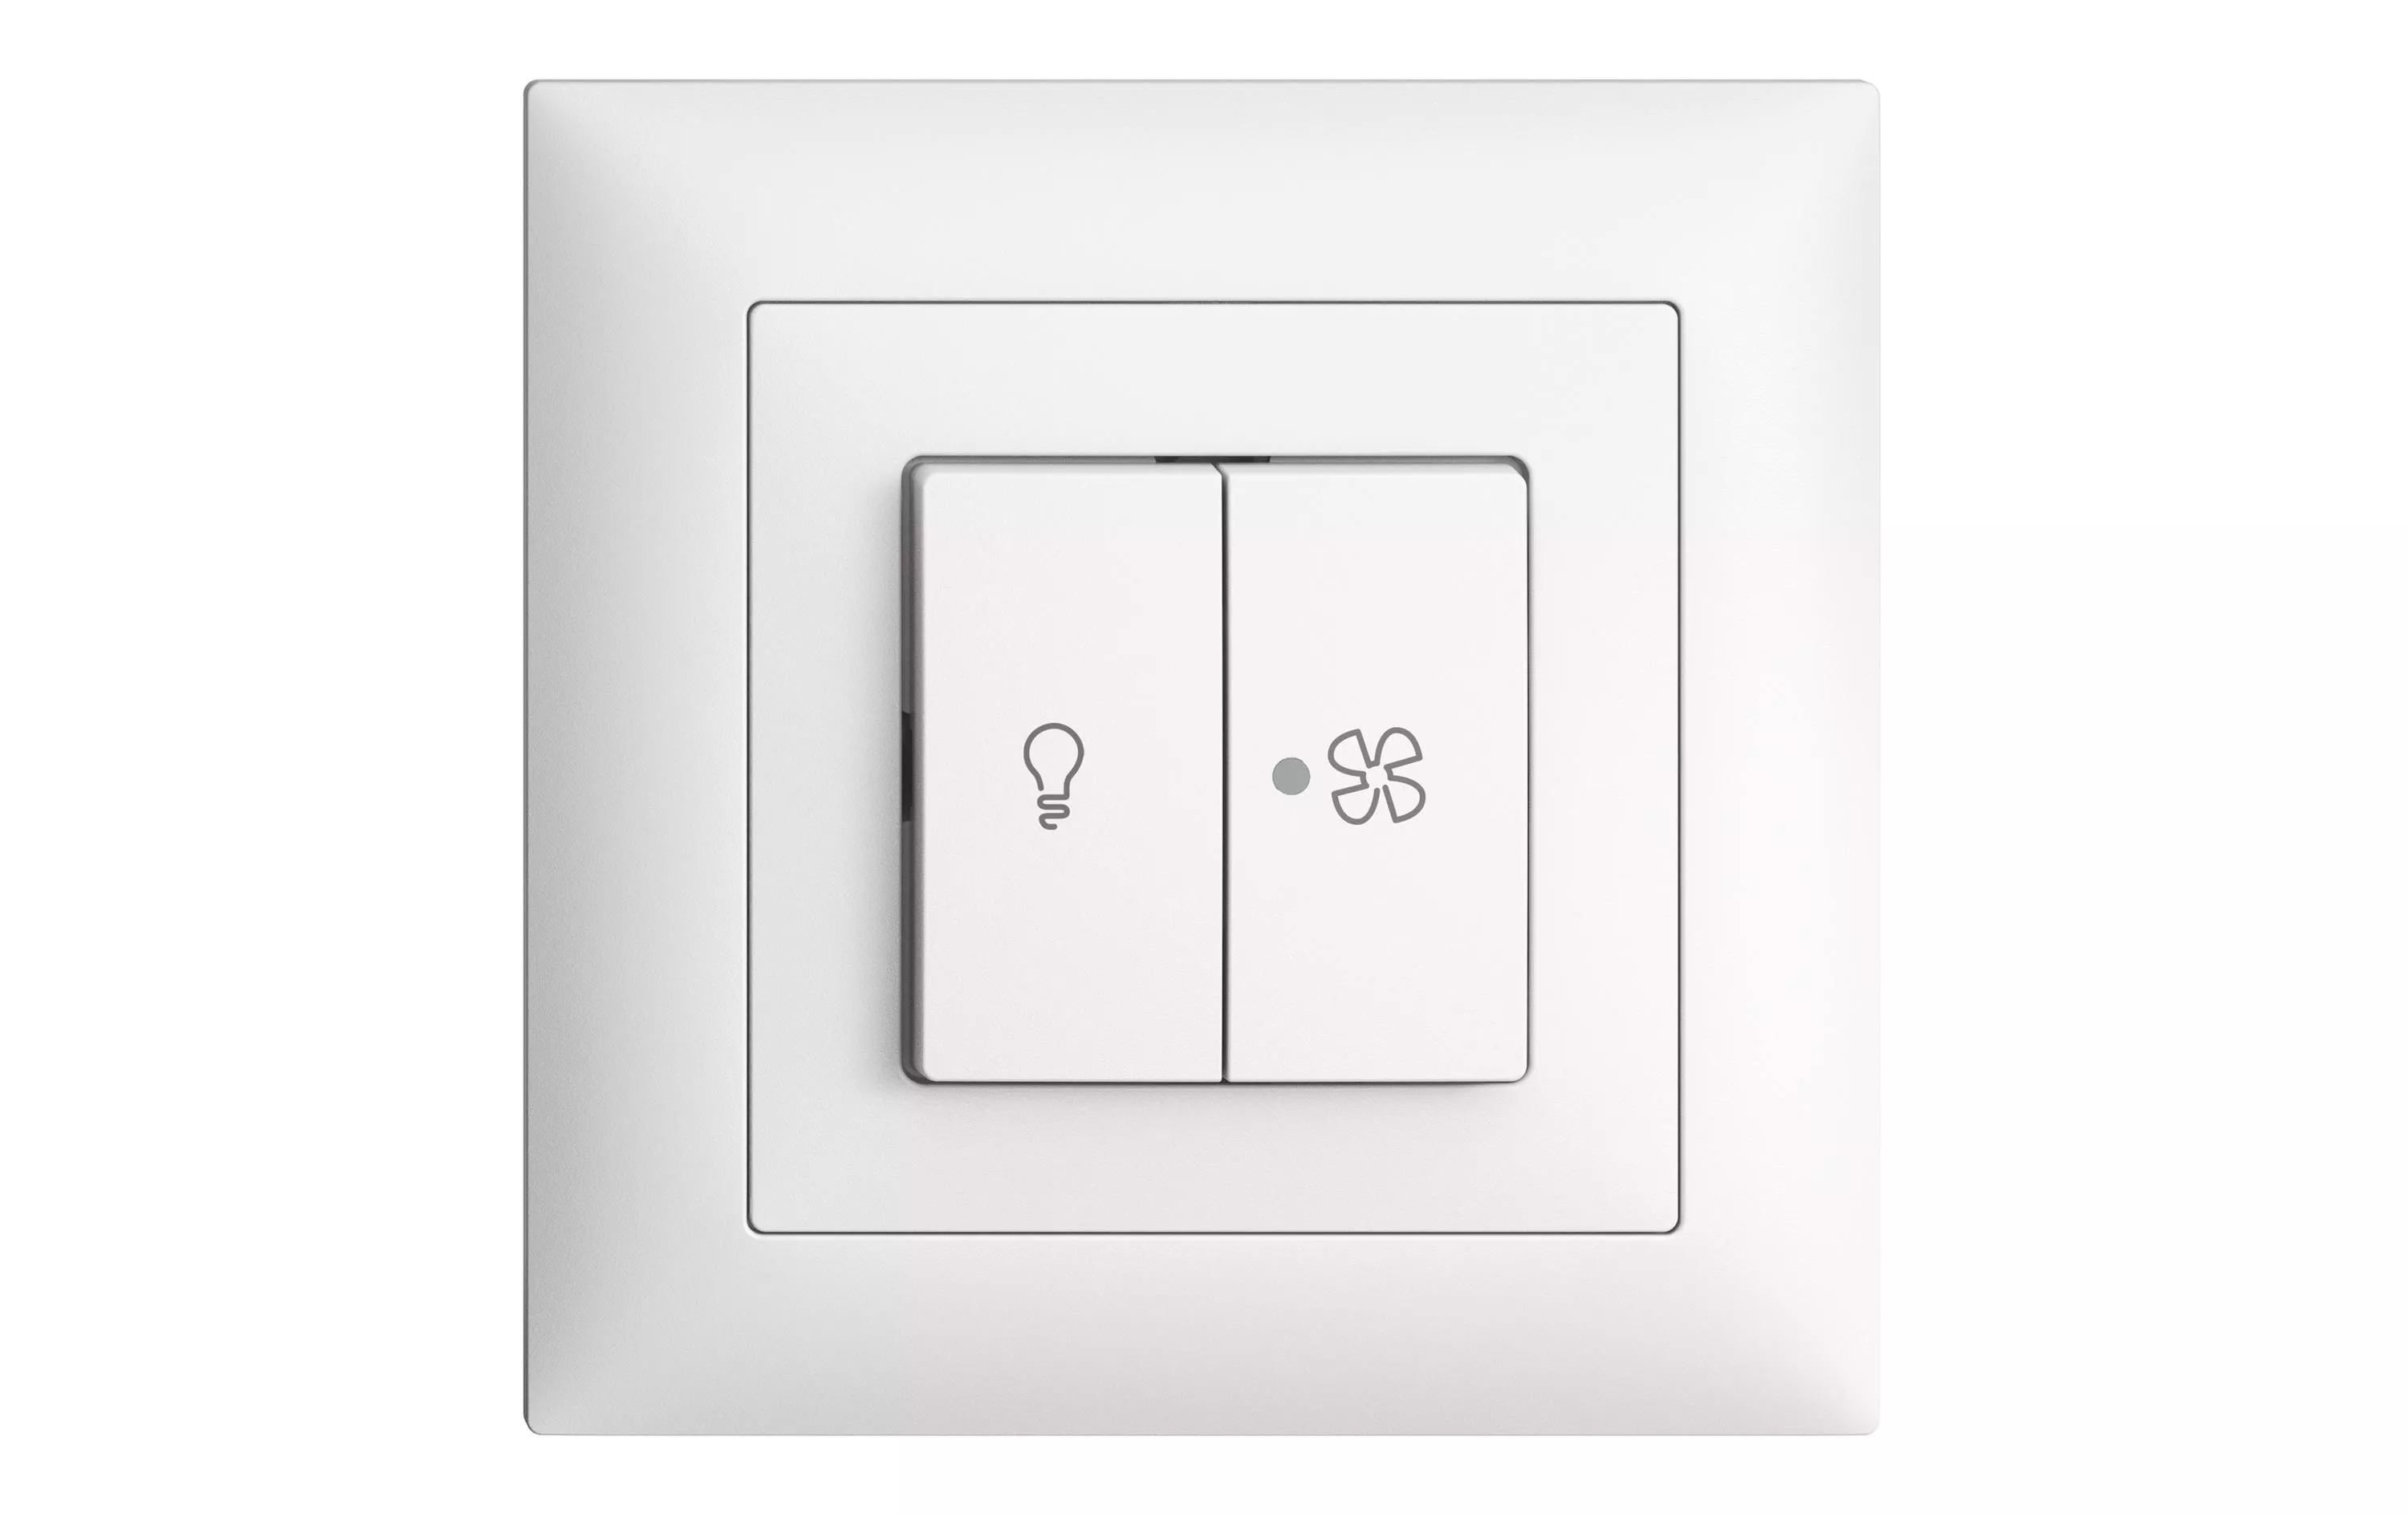 UP-Schalter für Lampe und Ventilator